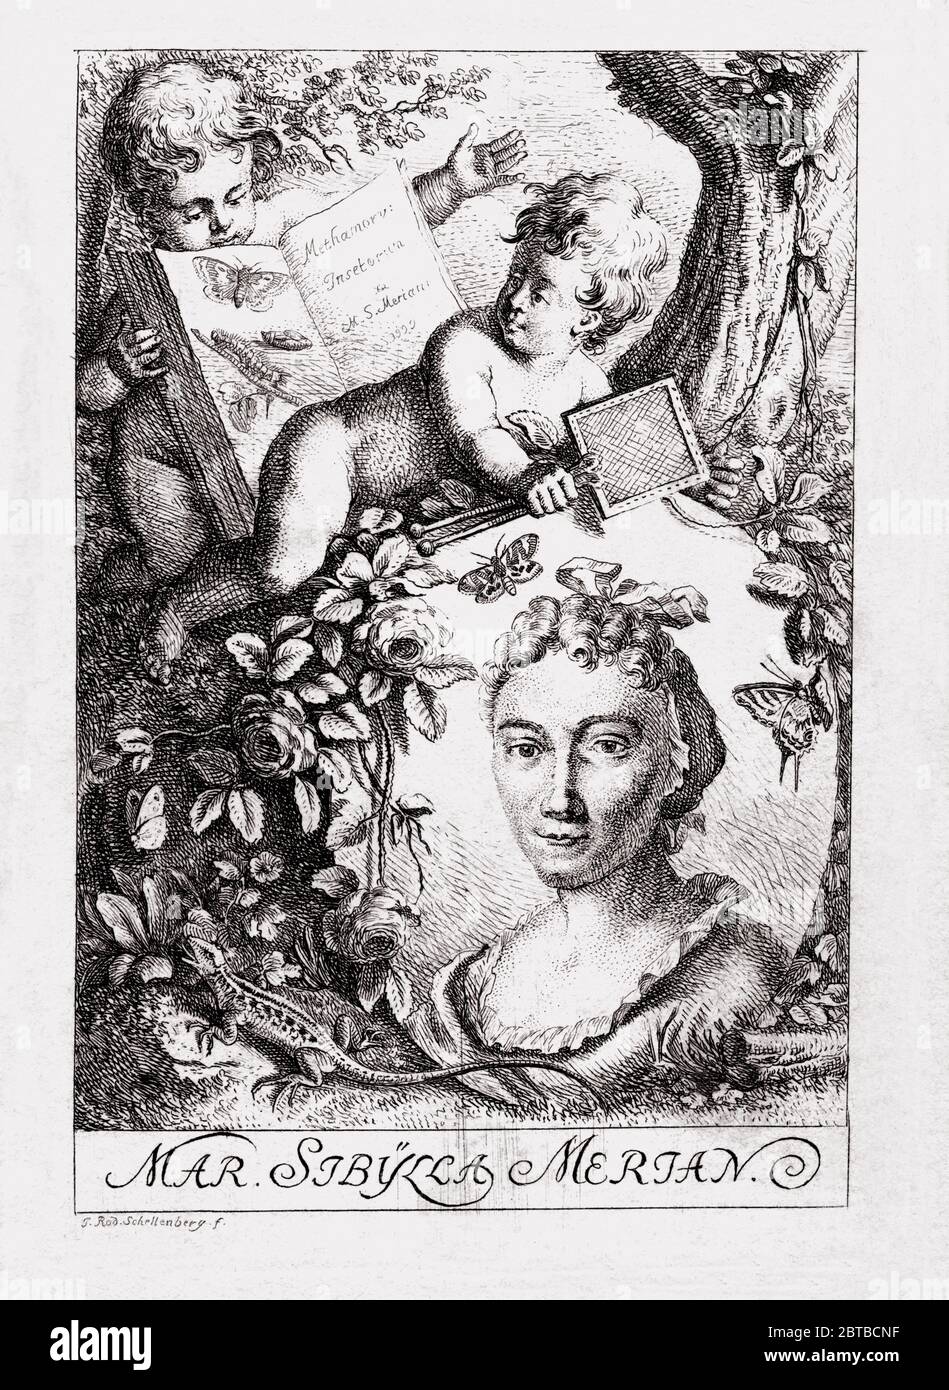 1790 c, ALLEMAGNE : la femme naturaliste allemande peintre , illustratrice scientifique et biologiste MARIA SIBYLLA MERIAN ( 1647 - 1717 ). Le père de Sibylla était le graveur et pubbliher suisse Mattäus Merian ( Matthew , 1593 - 1650 ) l'aîné . Portrait du graveur Johann Rudolf Schellenberg ( 1740 - 1806 ) . - SYBILLA - HISTOIRE - foto storica storiche - portrait - ritratto - NATURALISTA - NATURALISTE - SCIENZA - SCIENCE - BIOLOGIE - BIOLOGIA - illustratrice - illustrateur - femme peintre - pittrice - pittura - peinture - ARTE - ARTS - ART - illustration - illustrazione - incisione - e Banque D'Images